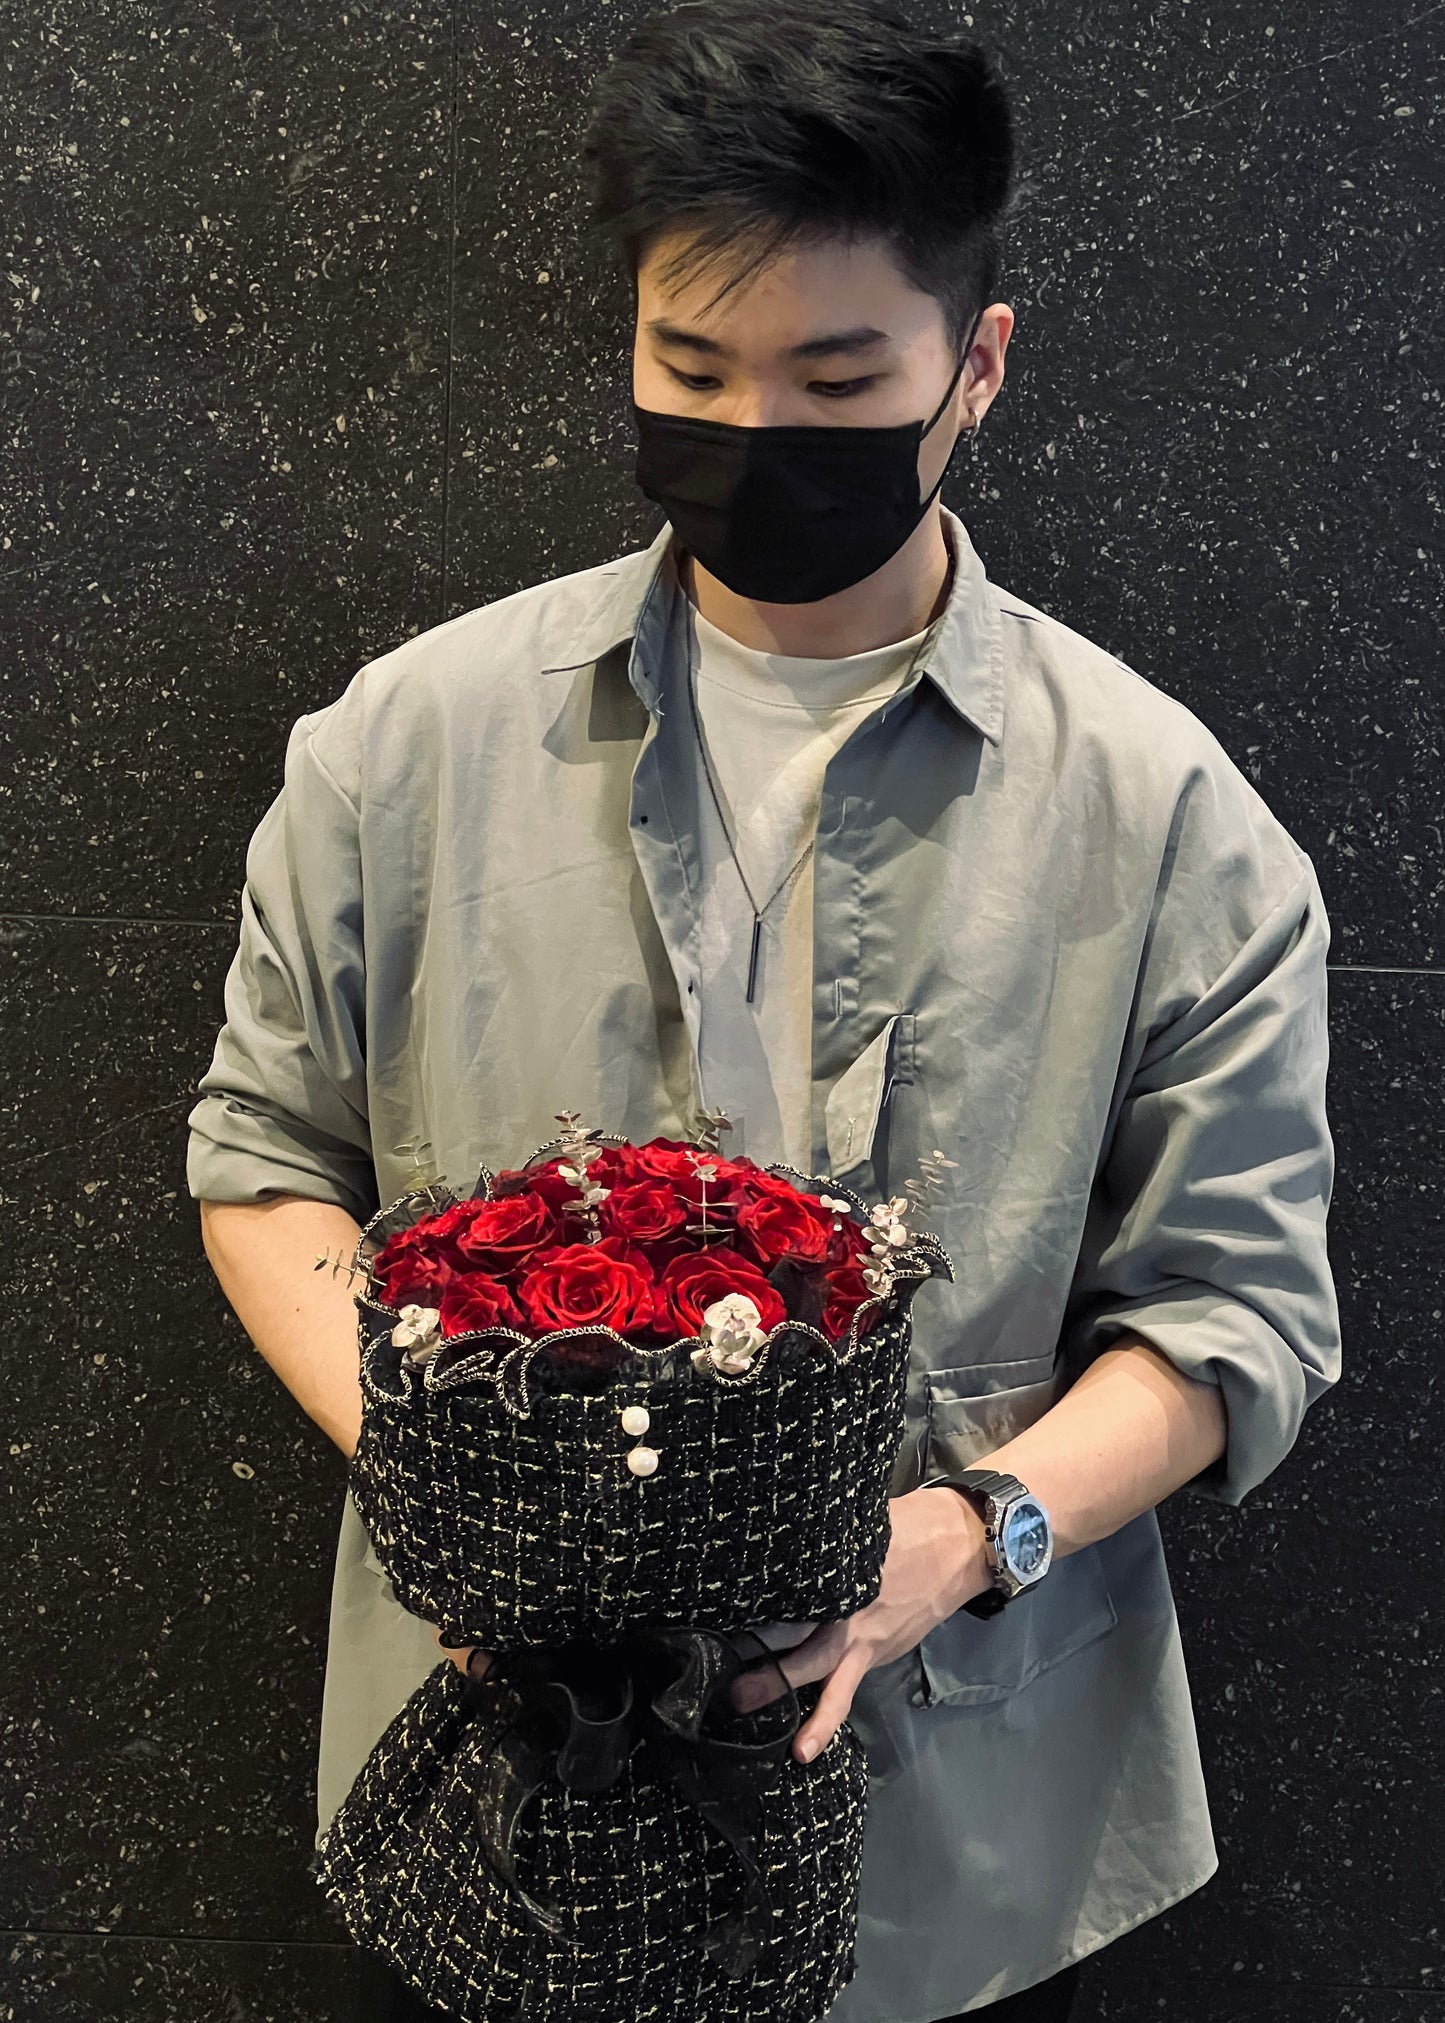 Roses Lá "Channel" | Premium Bouquet